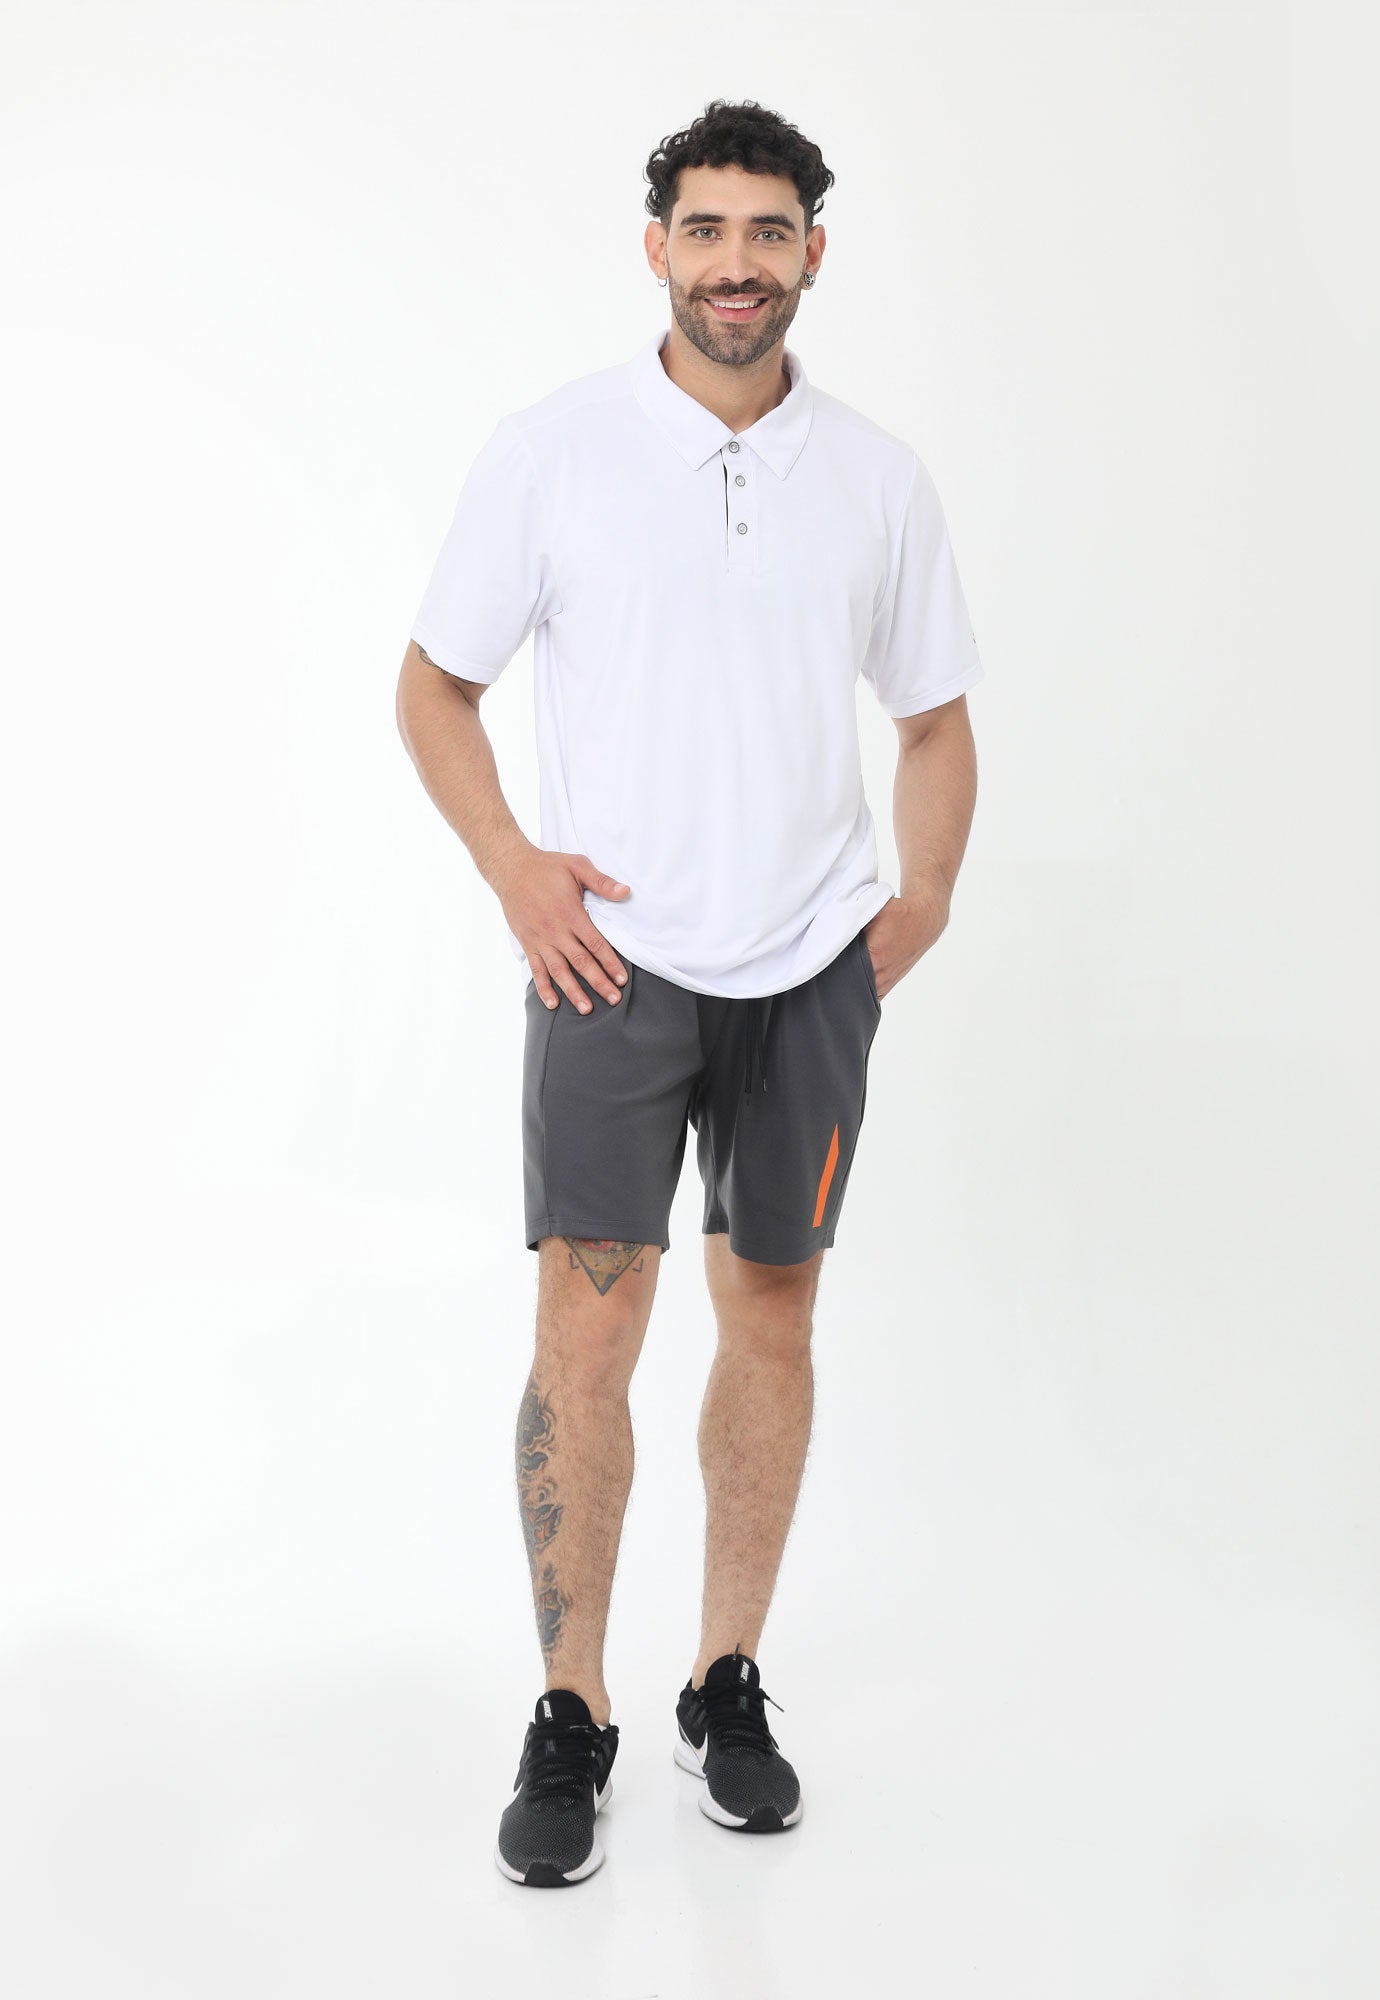 Camiseta polo deportiva blanca con perilla interna y almilla en tela contraste para hombre